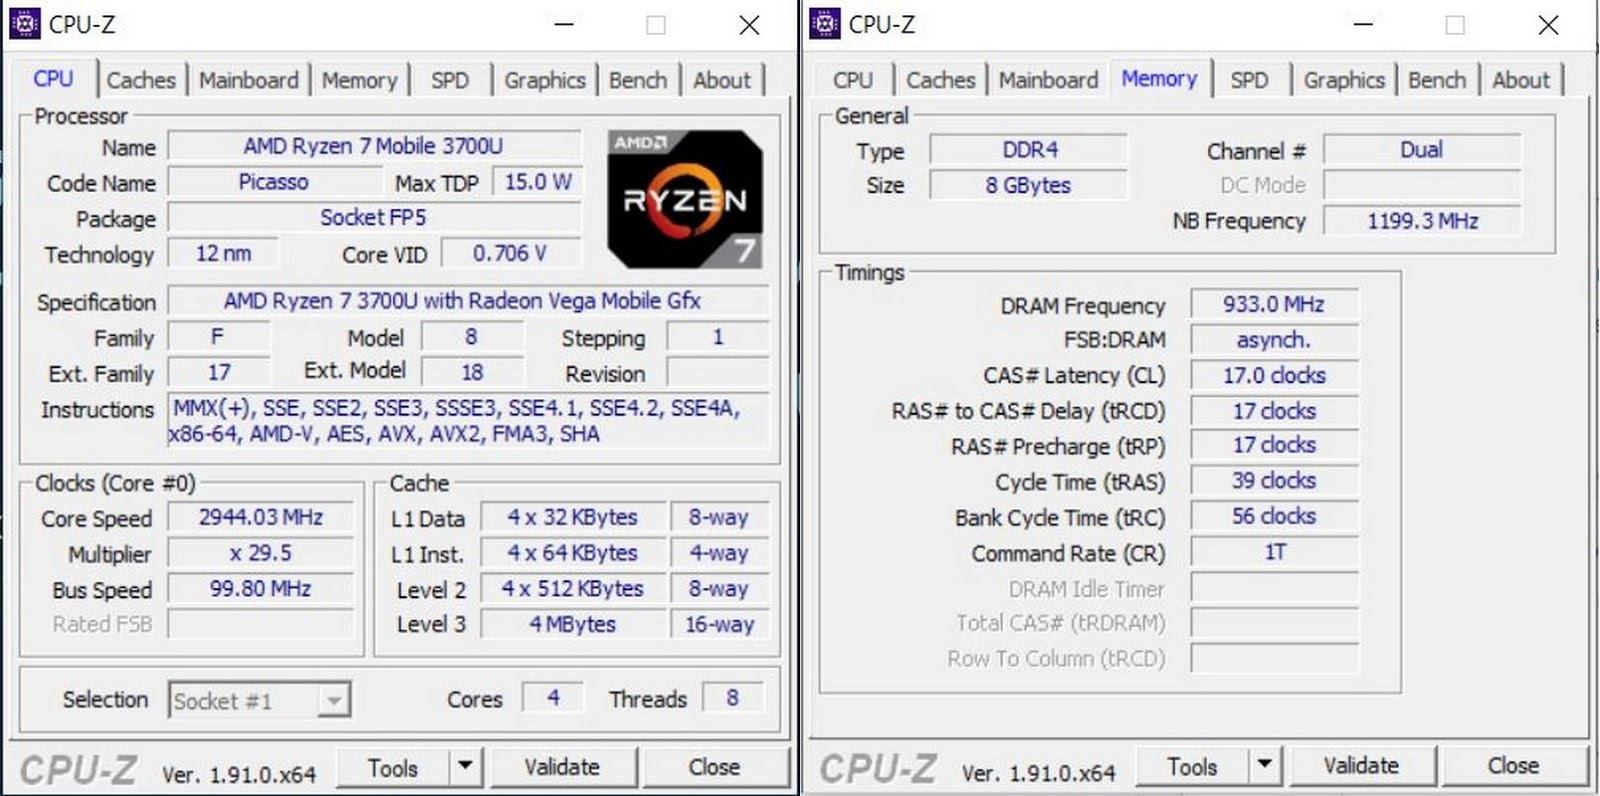 CPU-Z Asus Zenbook 14 UM431DA AM701T